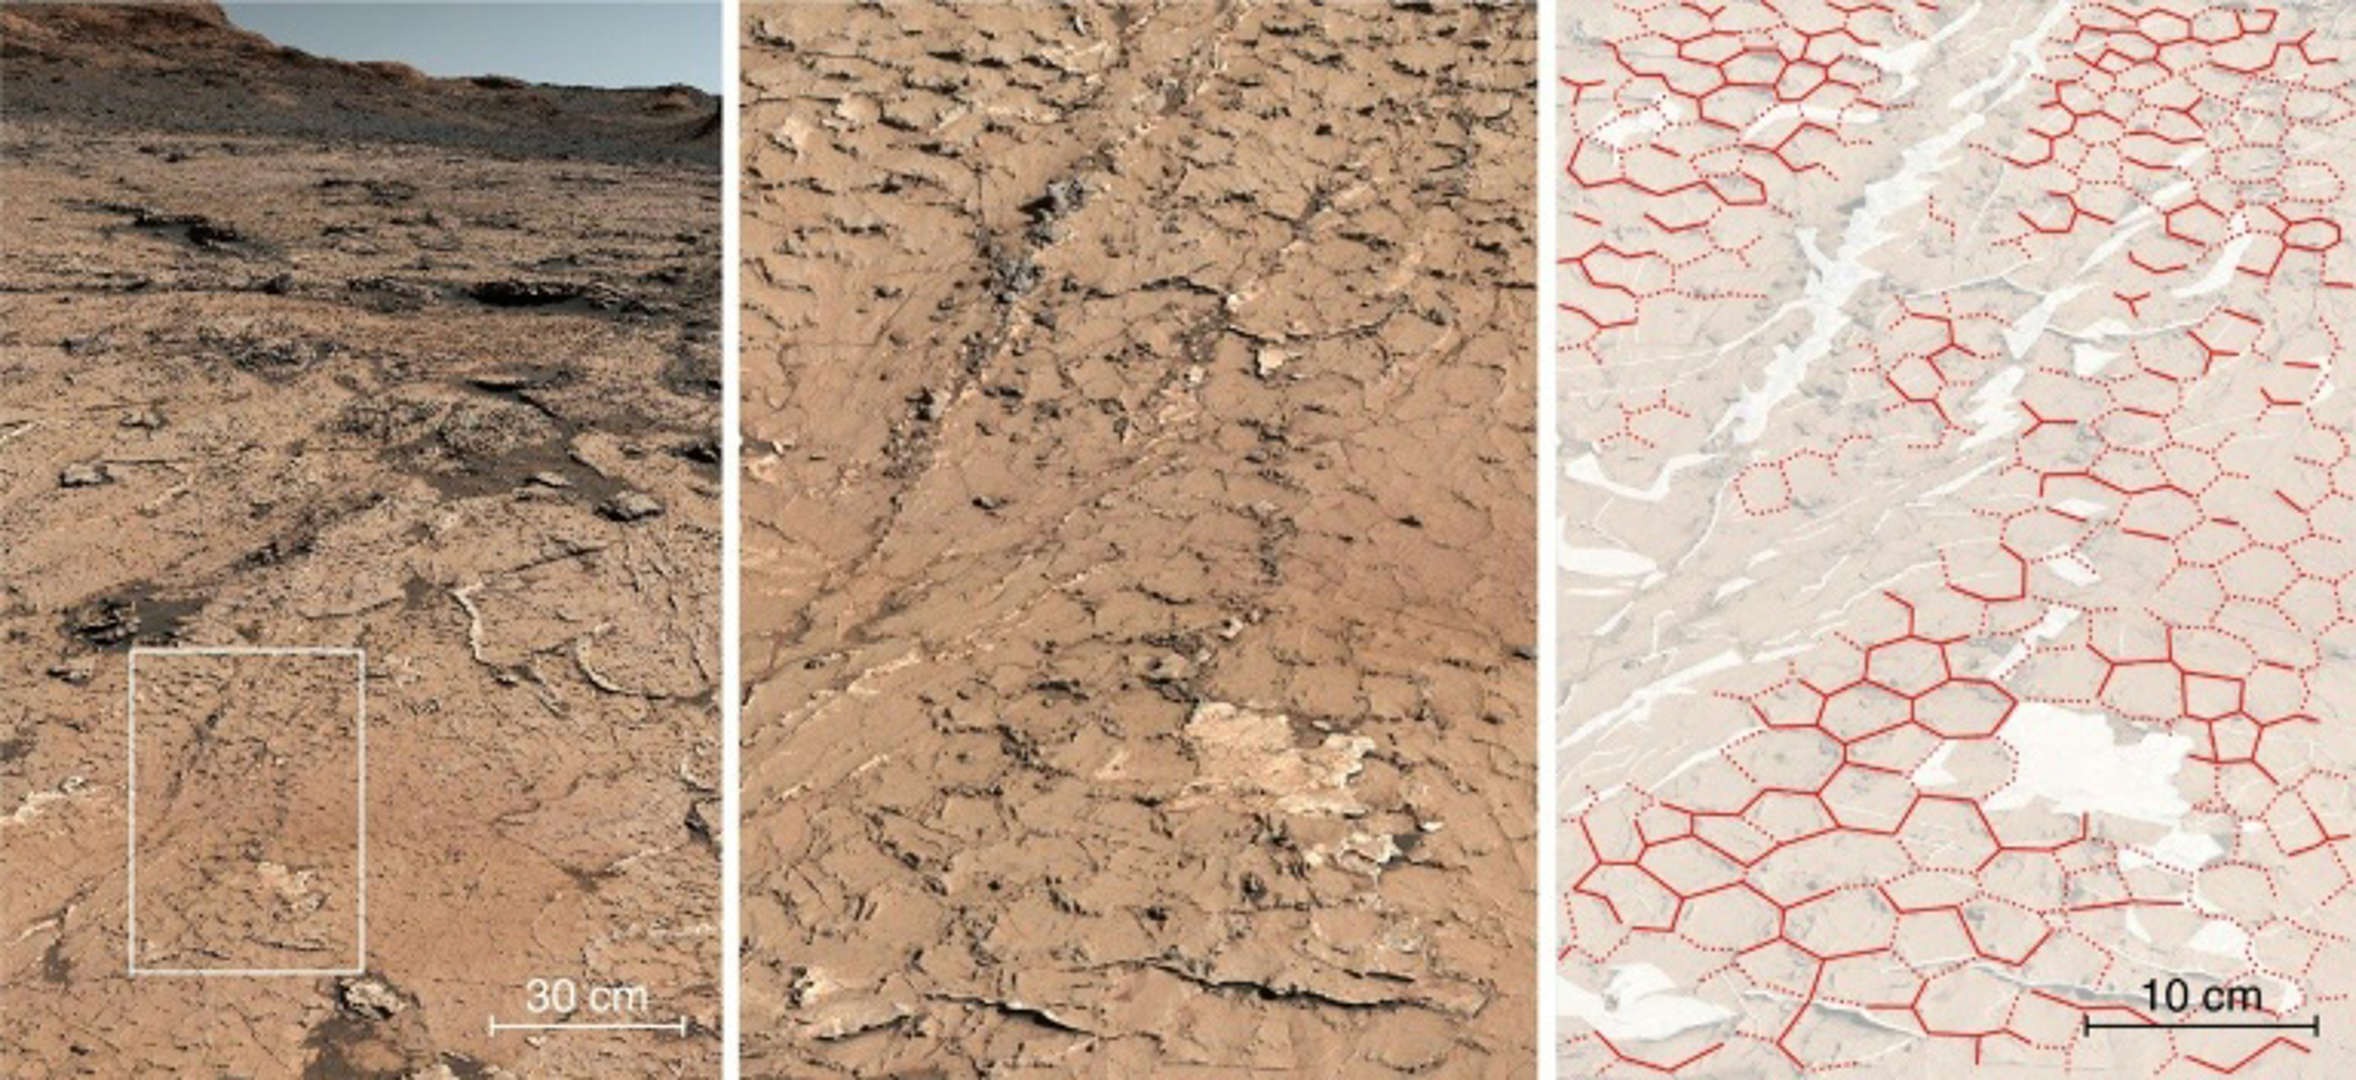 Візерунки в кратері Гейл інтерпретуються як доказ розтріскування бруду під час висихання